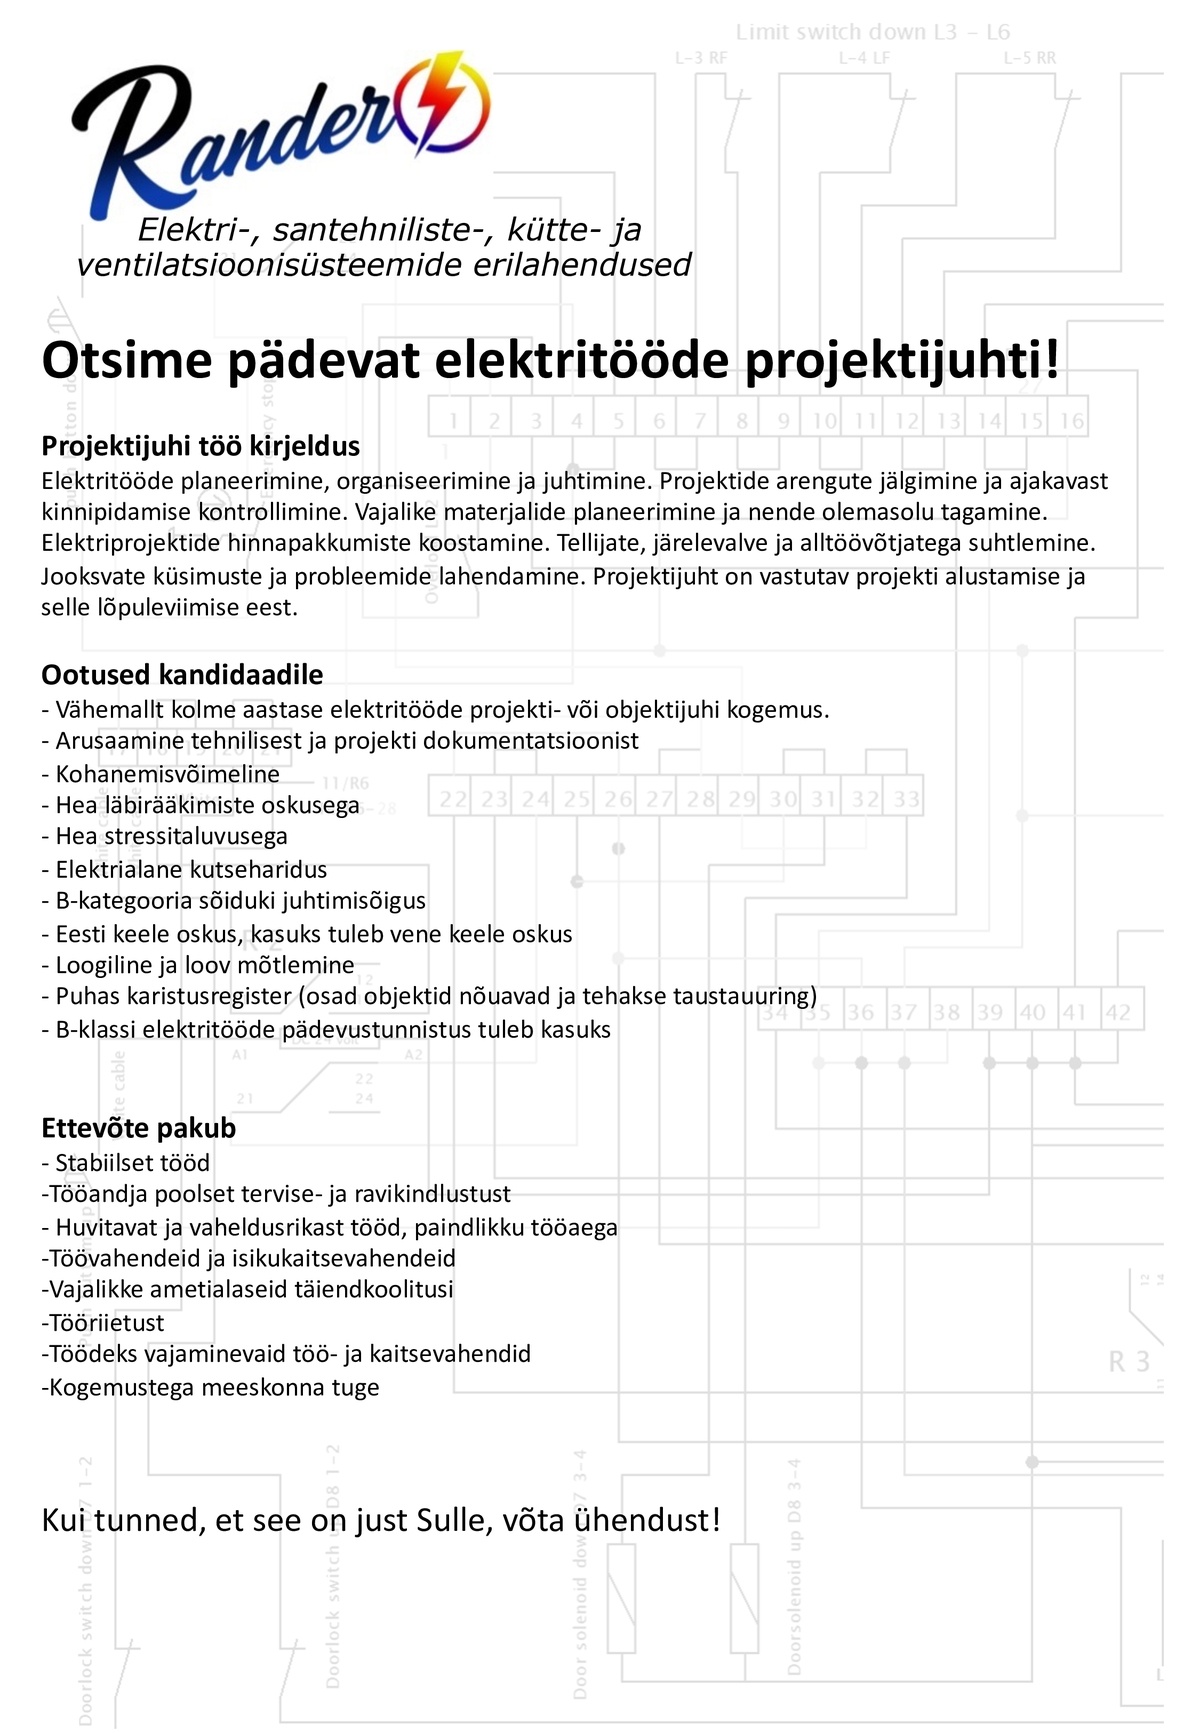 Randers OÜ Pädev elektritööde projektijuht